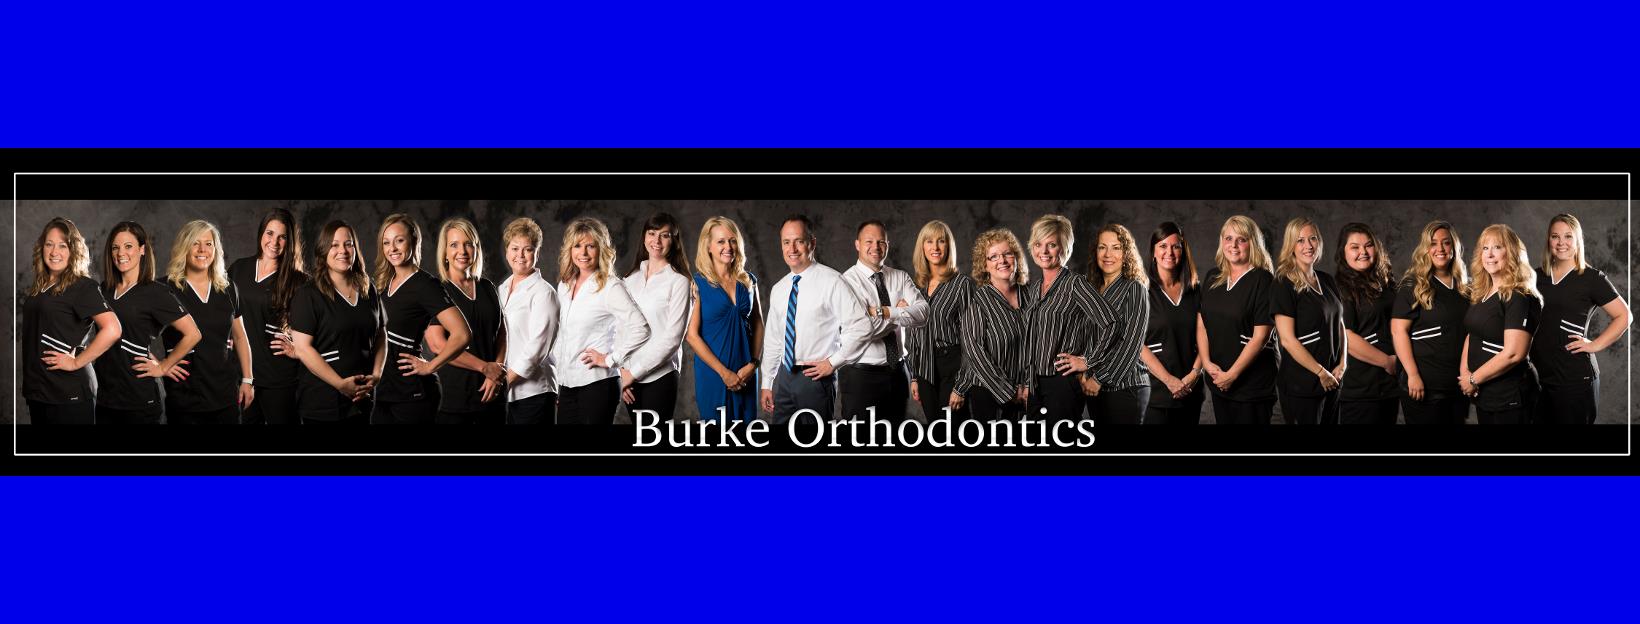 Burke Orthodontics